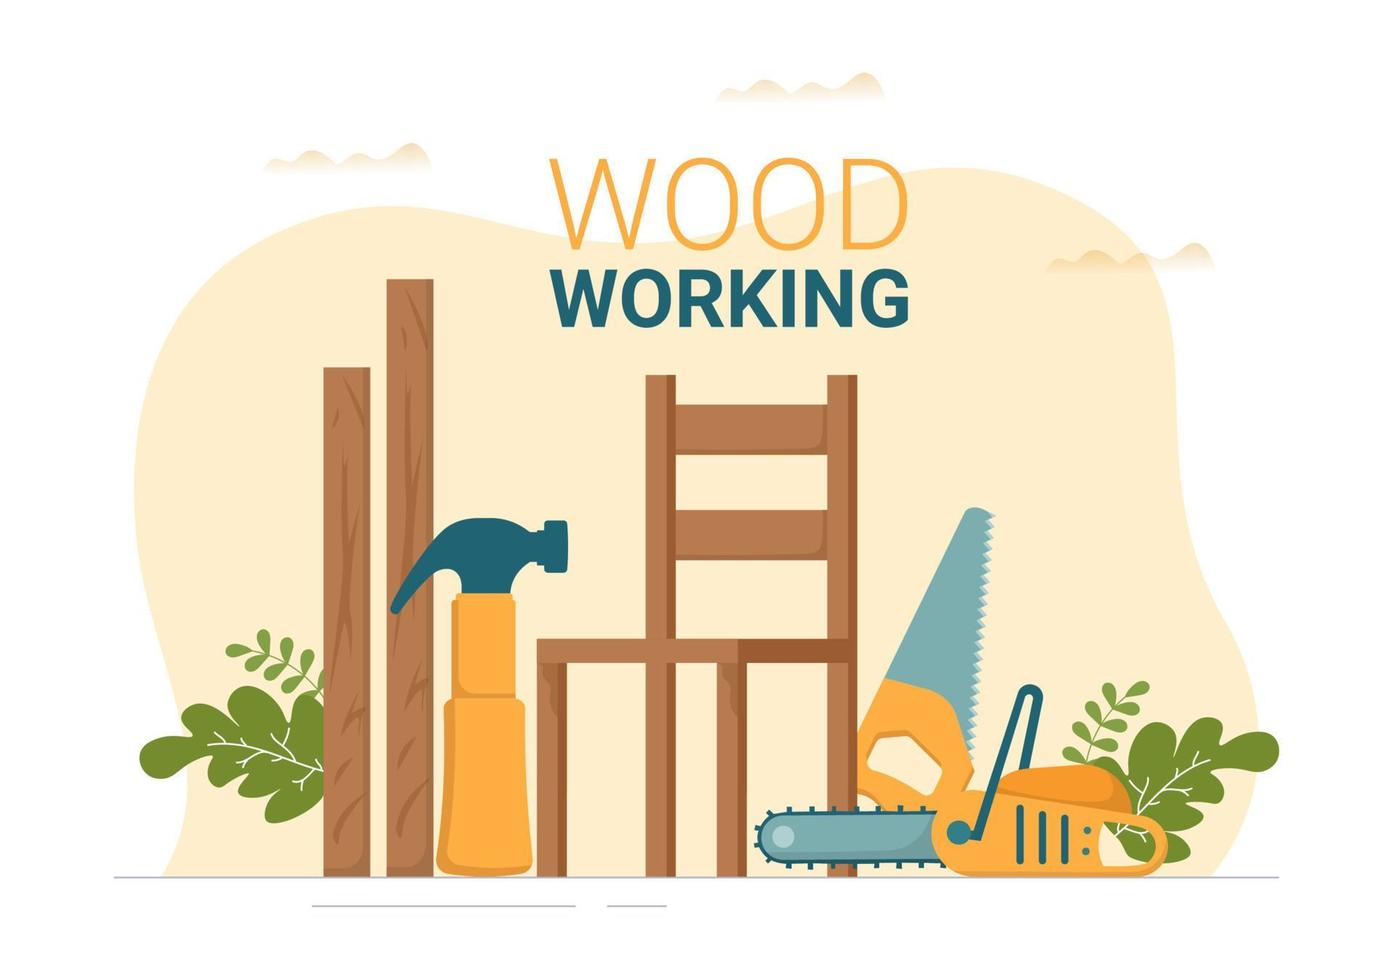 carpintería con corte de madera por artesanos modernos y trabajadores que usan herramientas en una ilustración de plantilla dibujada a mano de caricatura plana vector